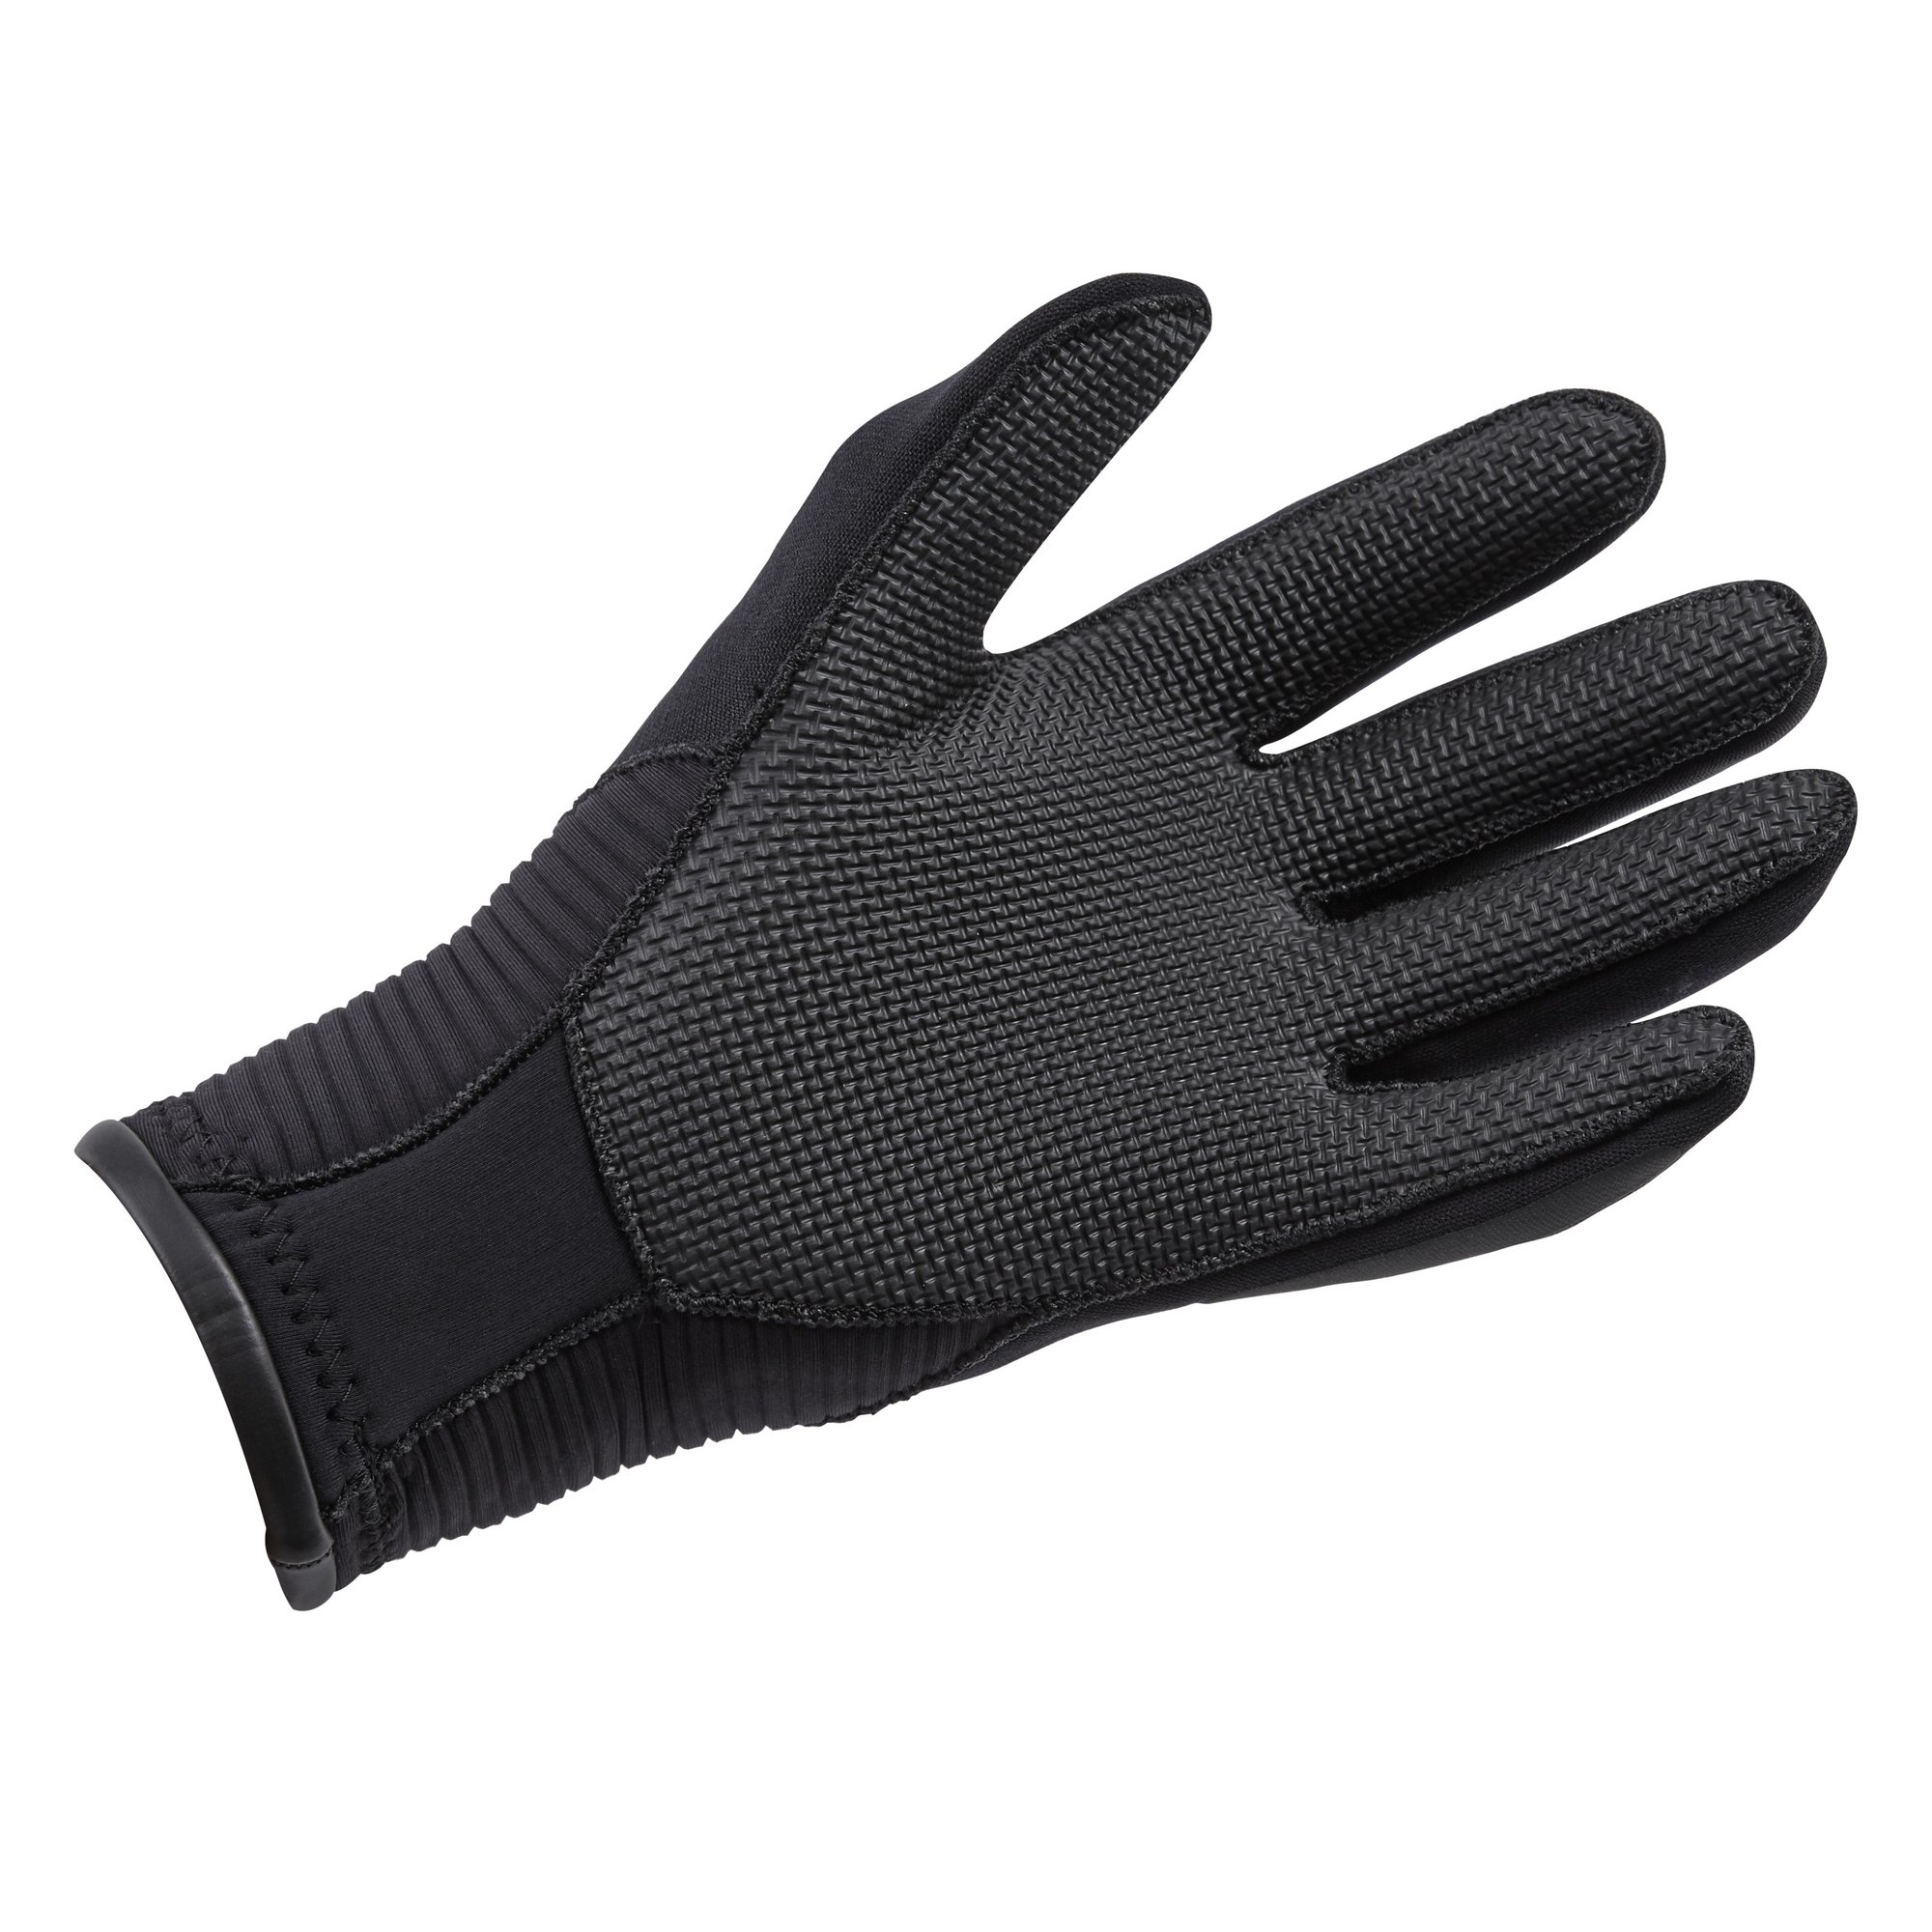 Black Size S Neoprene Fishing Gloves for sale